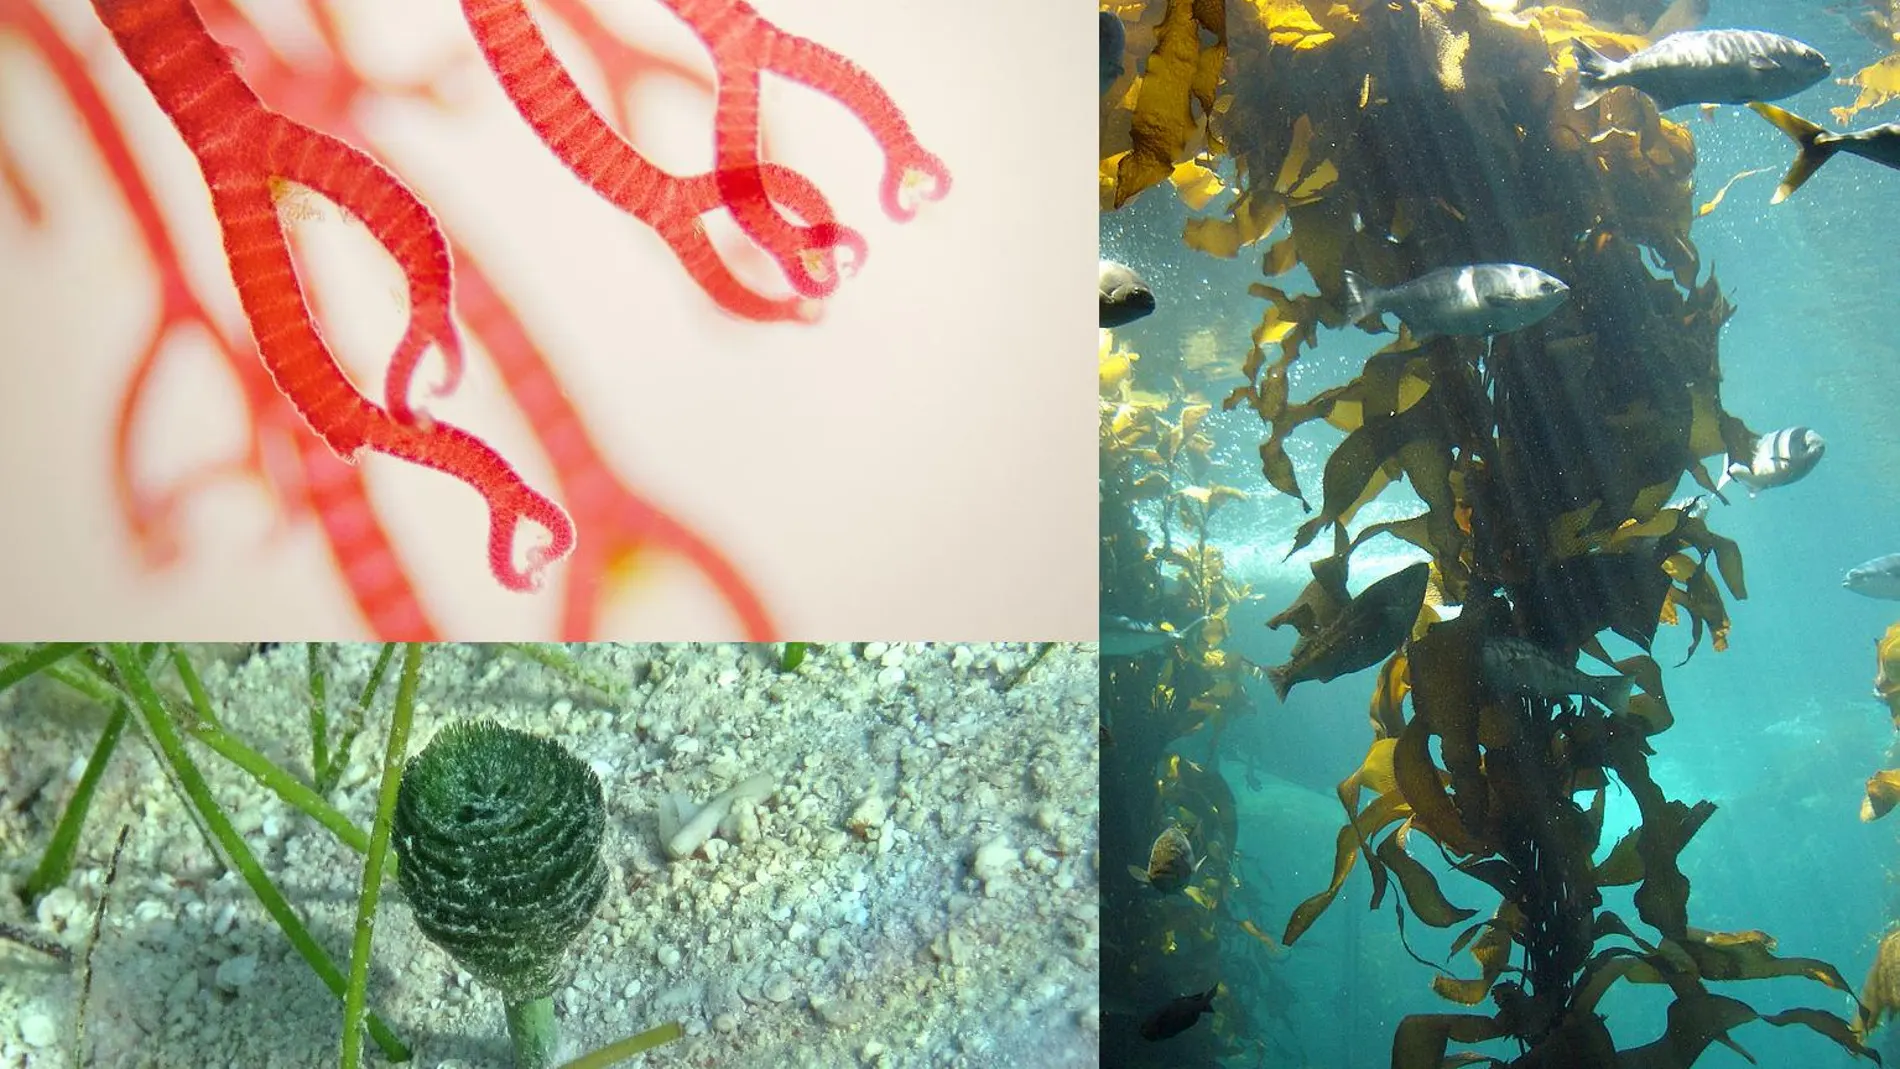 Imágenes de tres algas de tres linajes diferentes: un alga roja, un alga verde y un alga marrón.